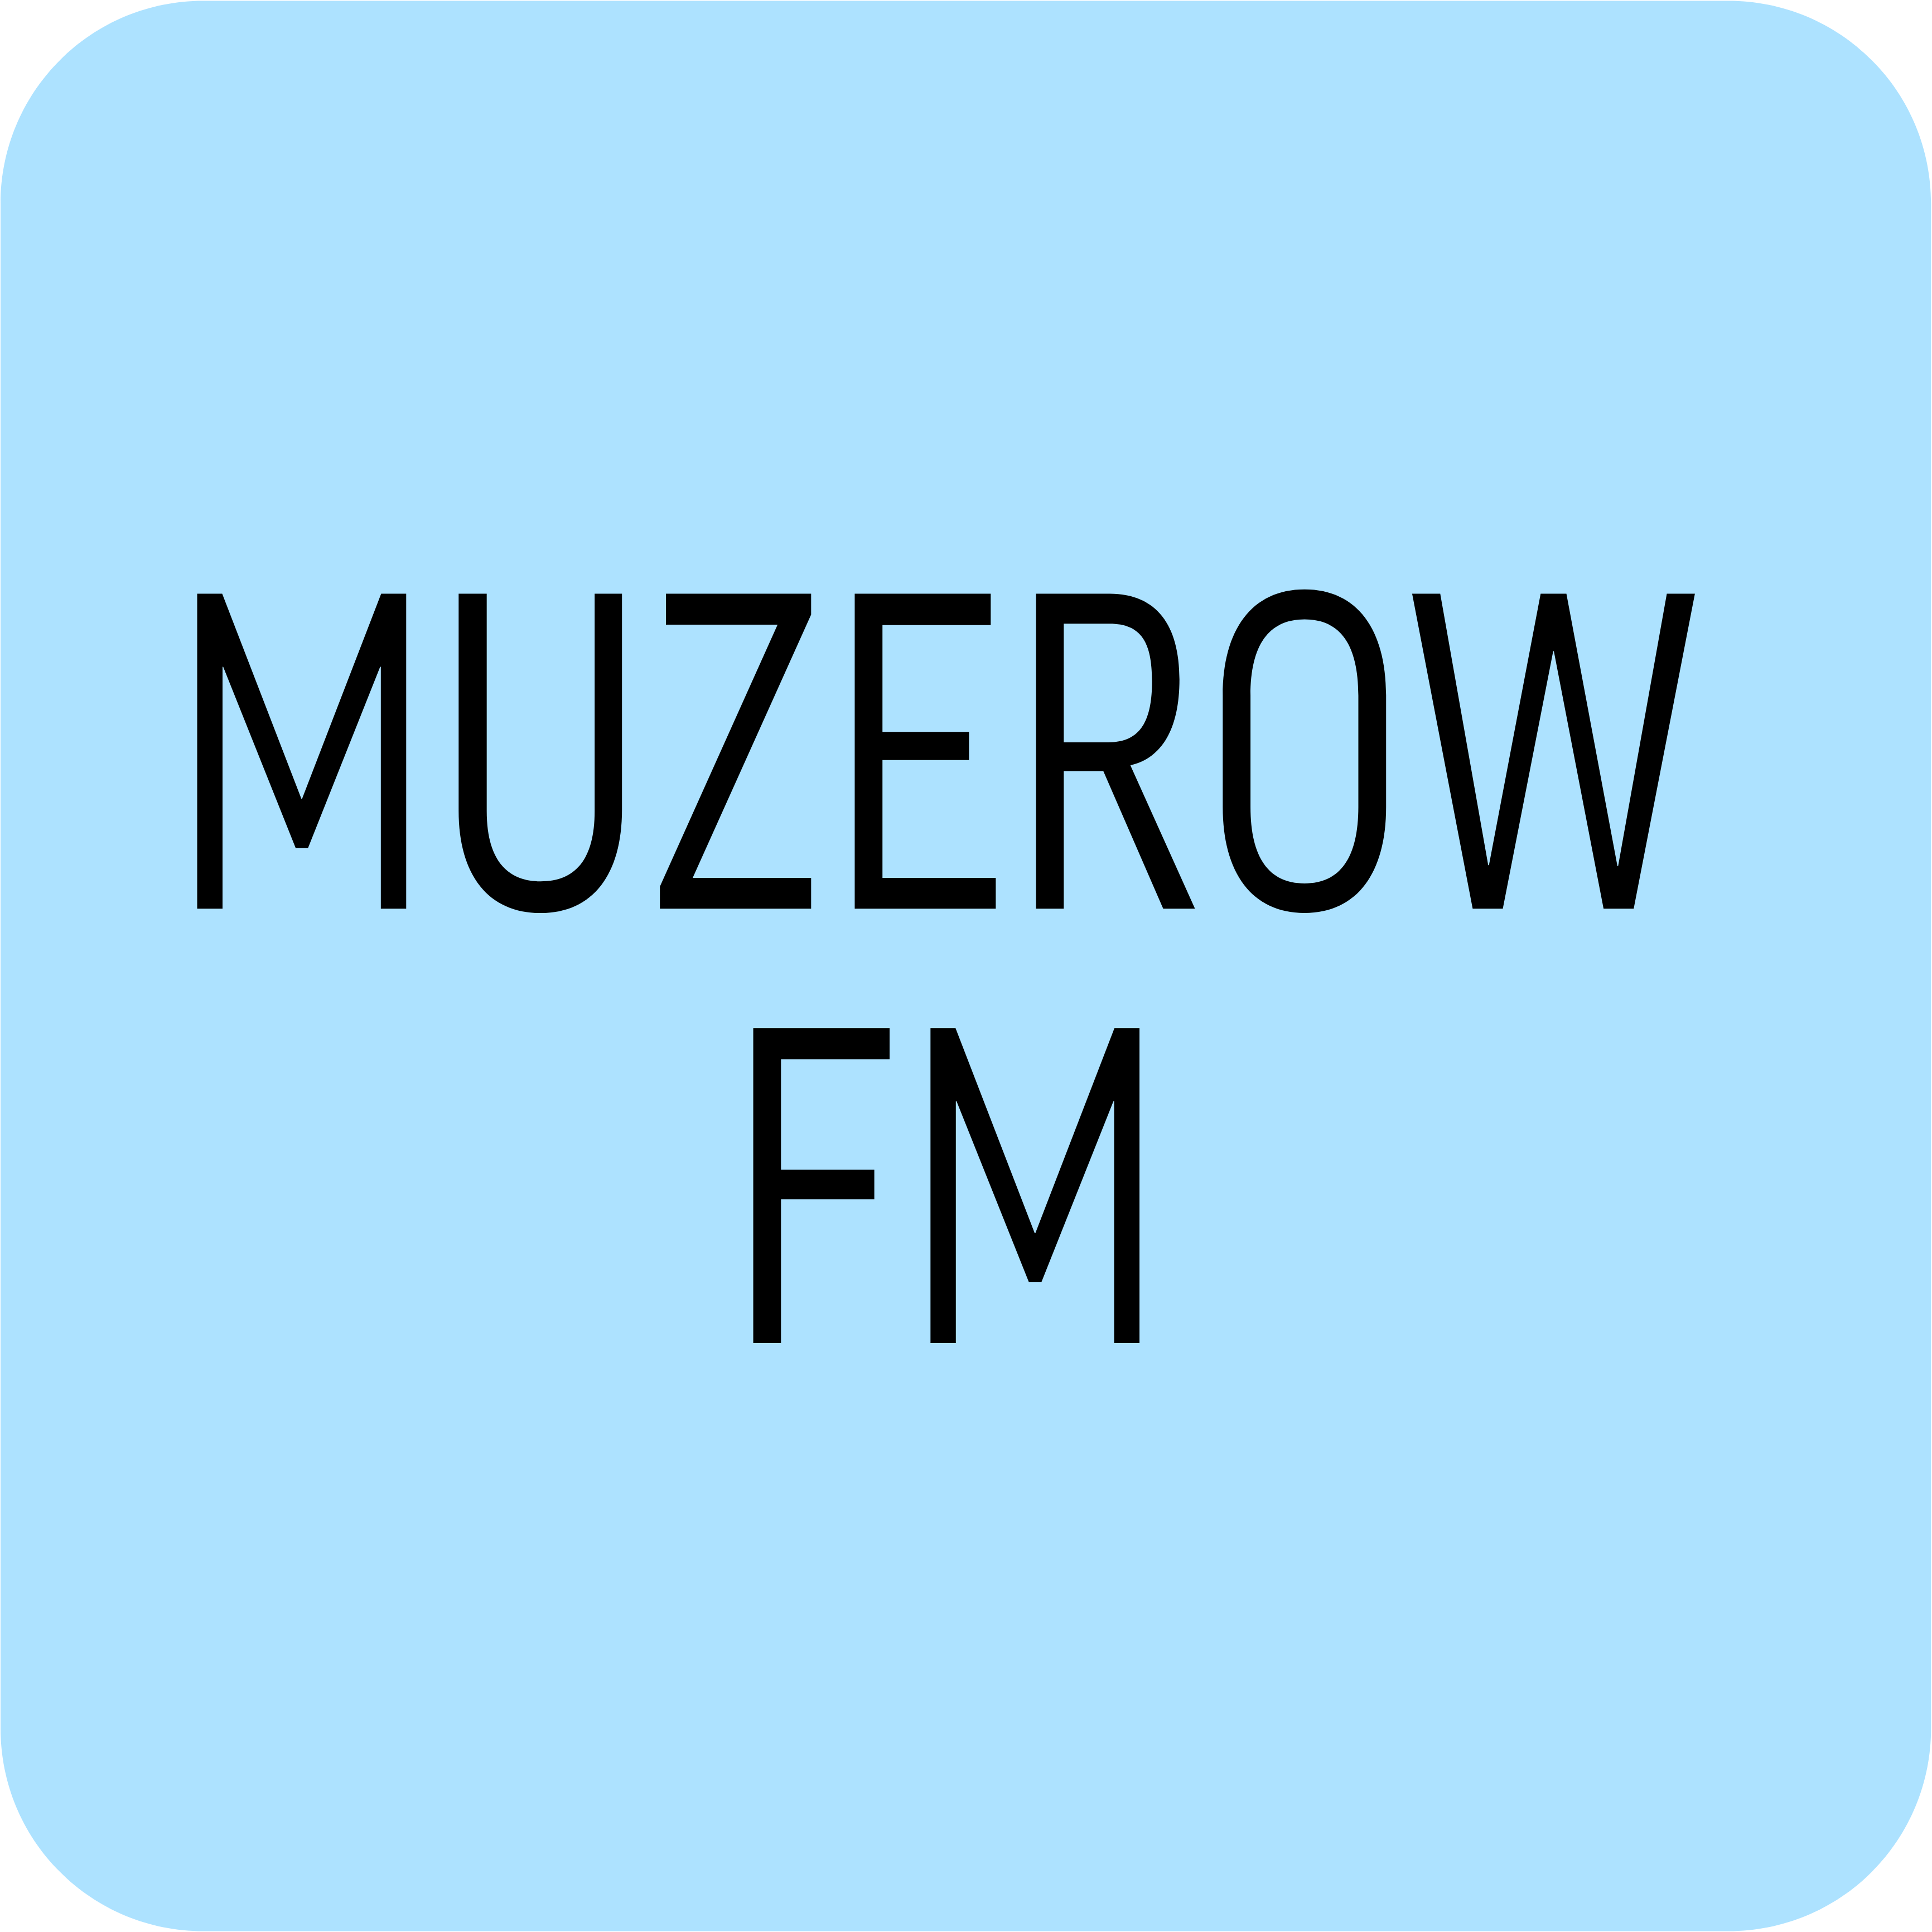 Muzerow FM